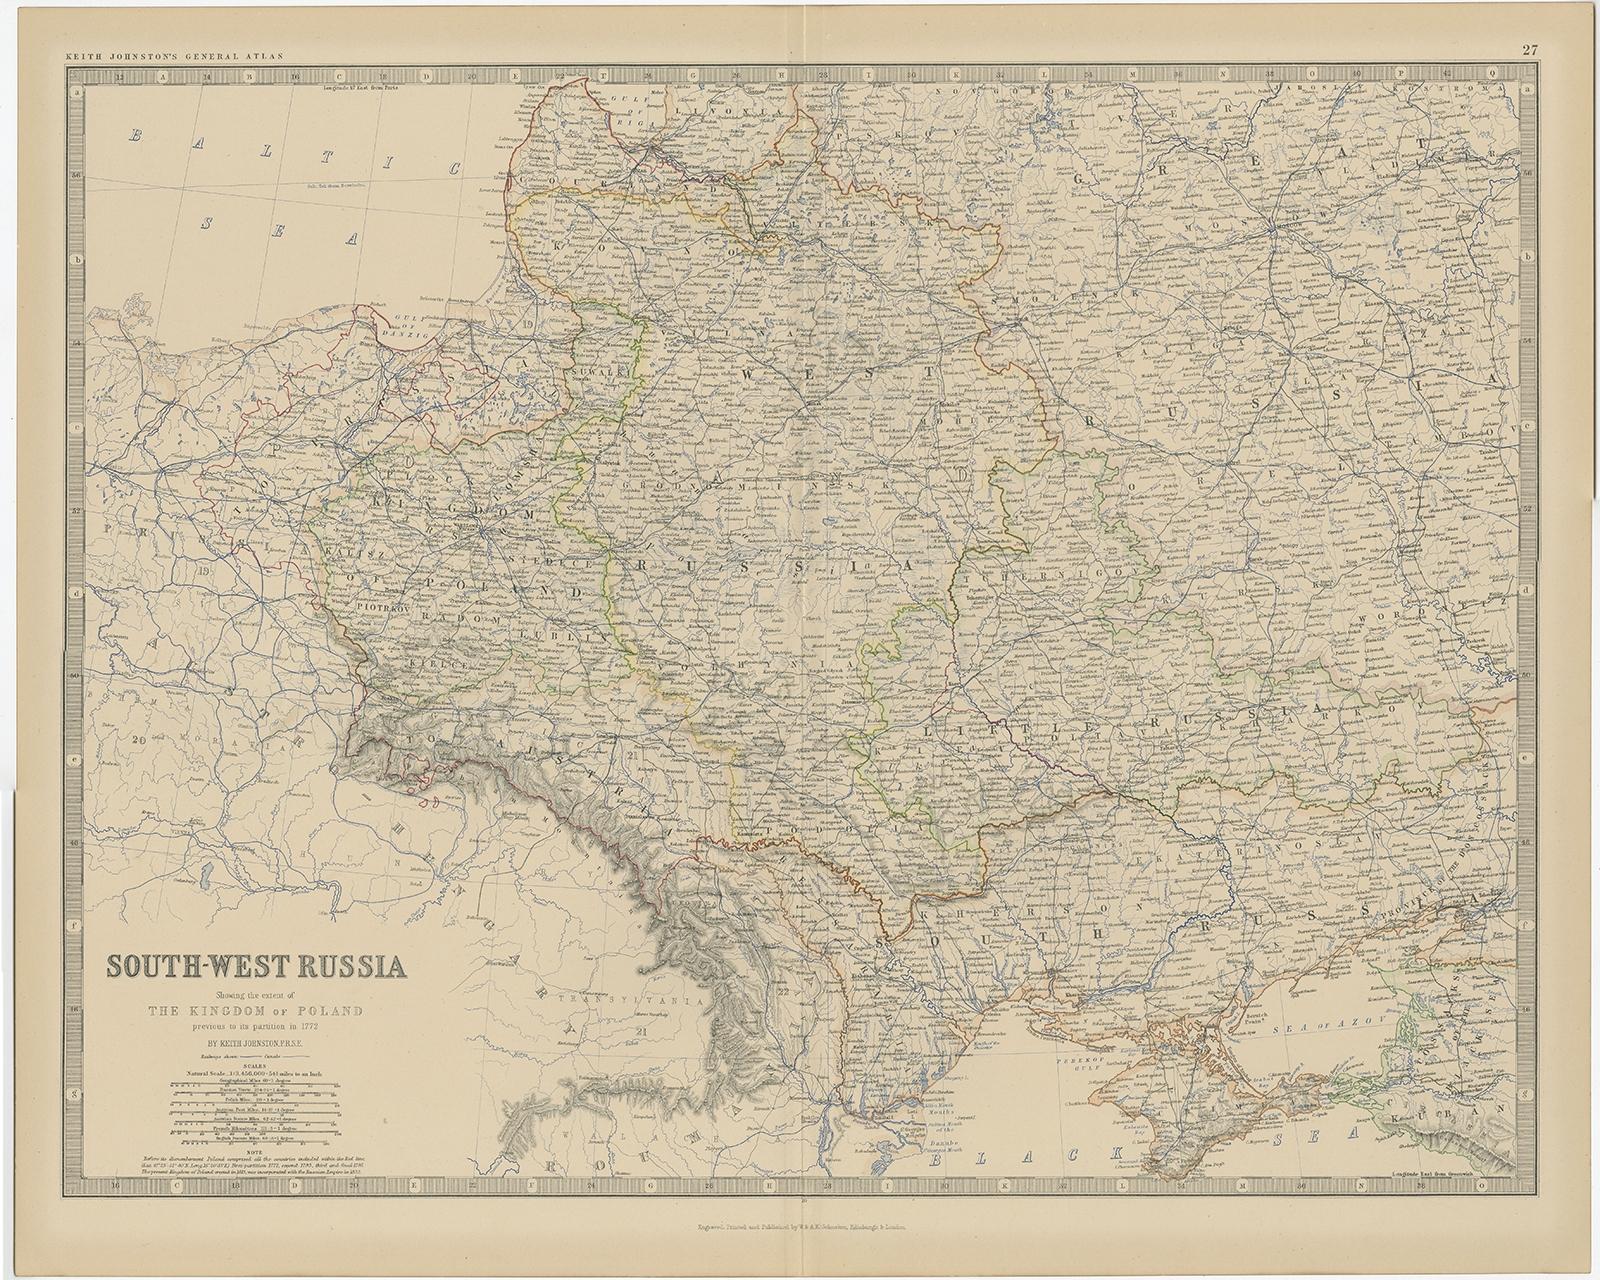 Antike Karte mit dem Titel 'Süd-West Russland'.

Alte Karte von Südrussland, die auch die Ausdehnung des Königreichs Polen zeigt. Diese Karte stammt aus 